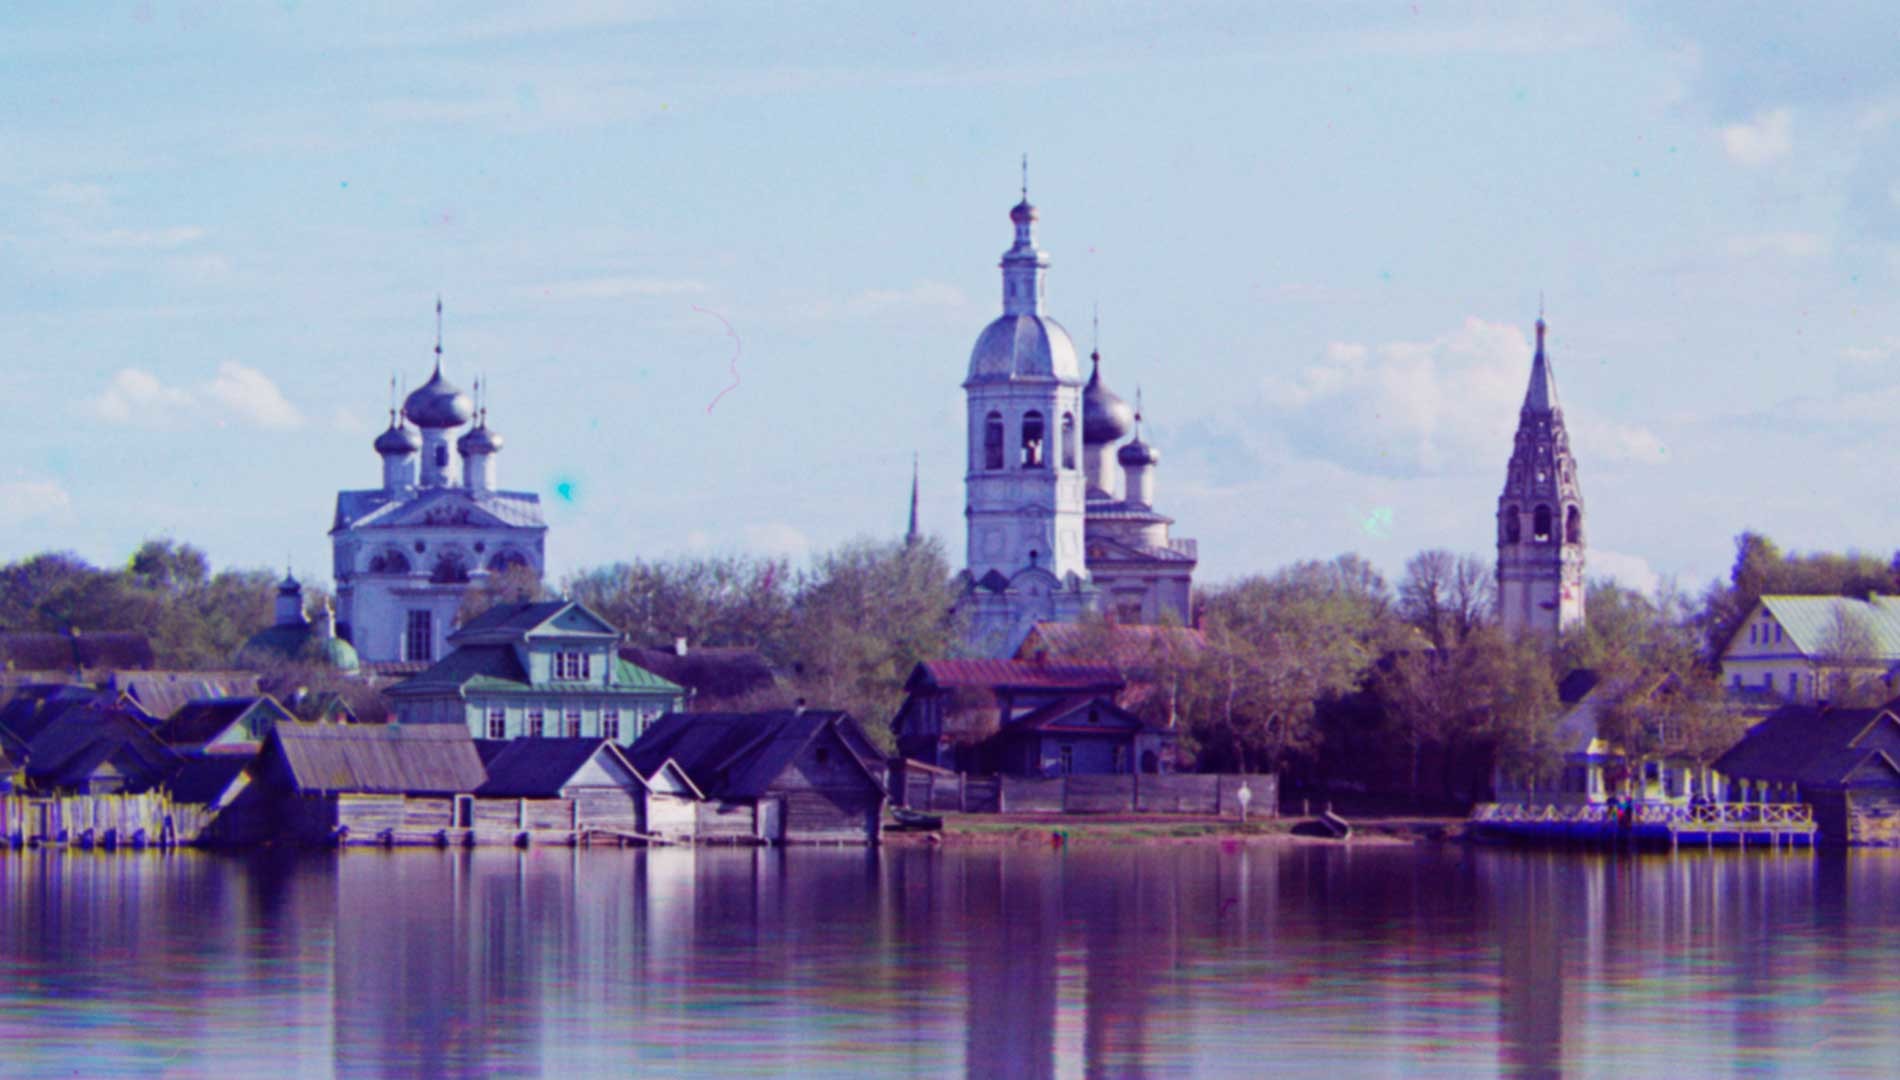 Ostashkov. Complesso della cattedrale dall’isola di Voroni. Da sinistra: Cattedrale della Trinità; Torre campanaria; Chiesa della Resurrezione; Torre campanaria. Inizio estate 1910
